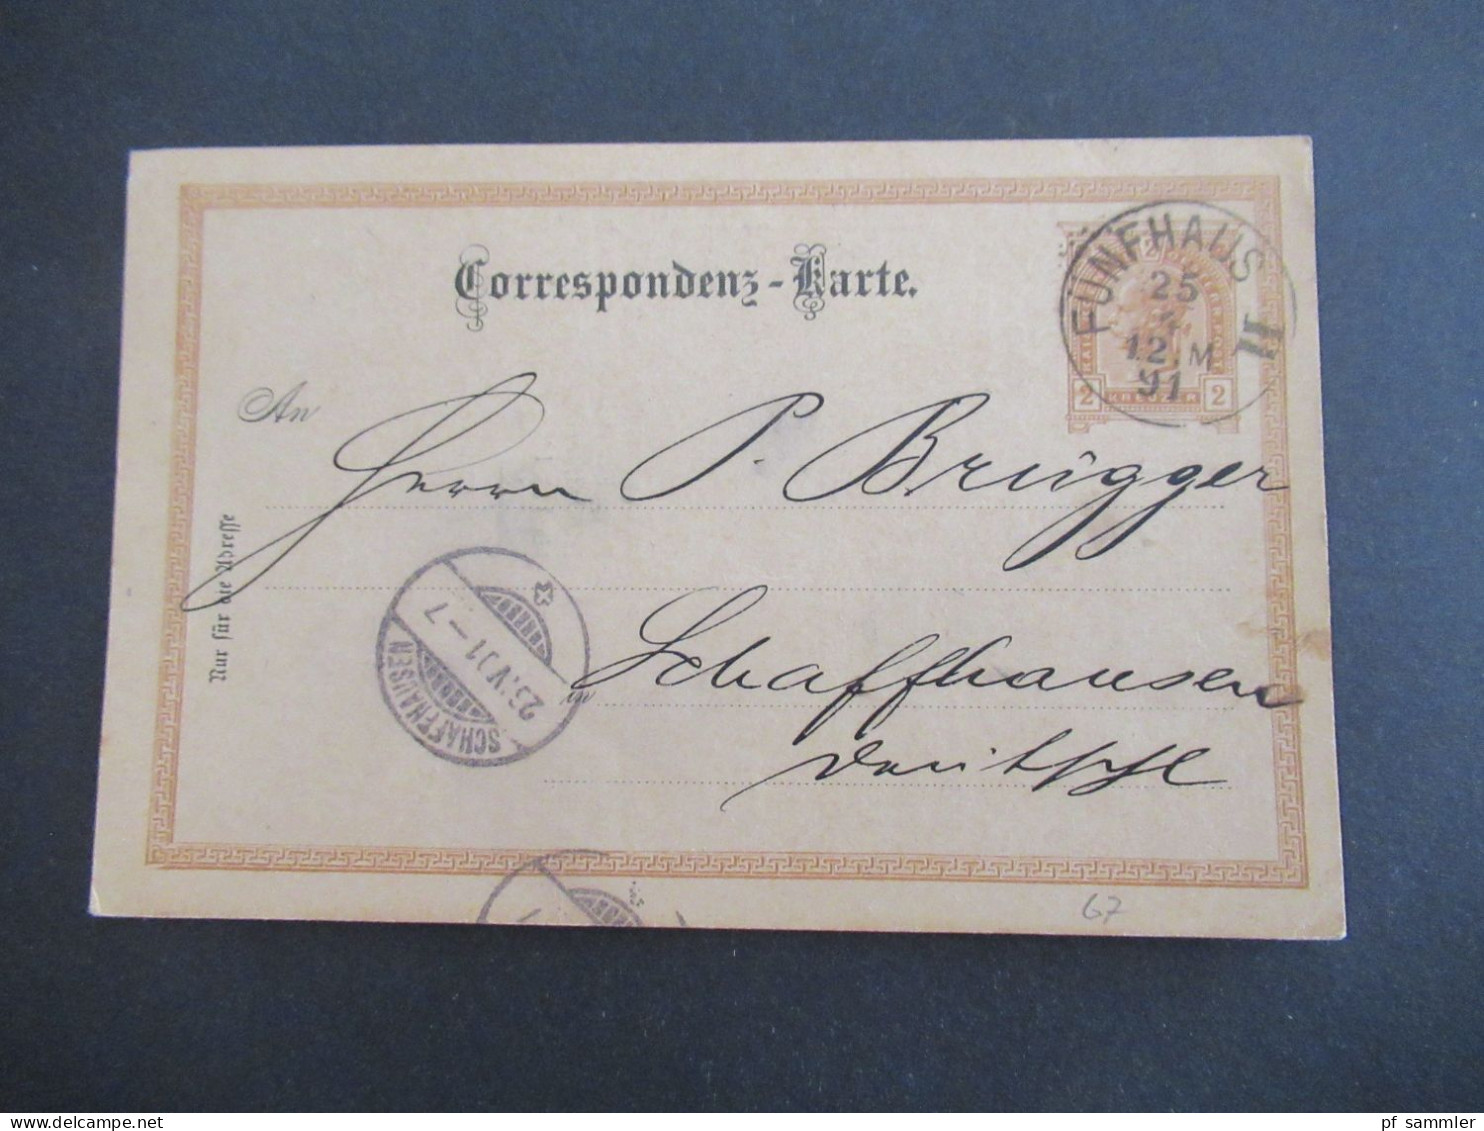 Österreich 1891 GA 2 Kreuzer Bedruckte PK Géza Baneth, Weingrosshandlung Wien Stempel Fünfhaus II - Schaffhausen Schweiz - Postkarten